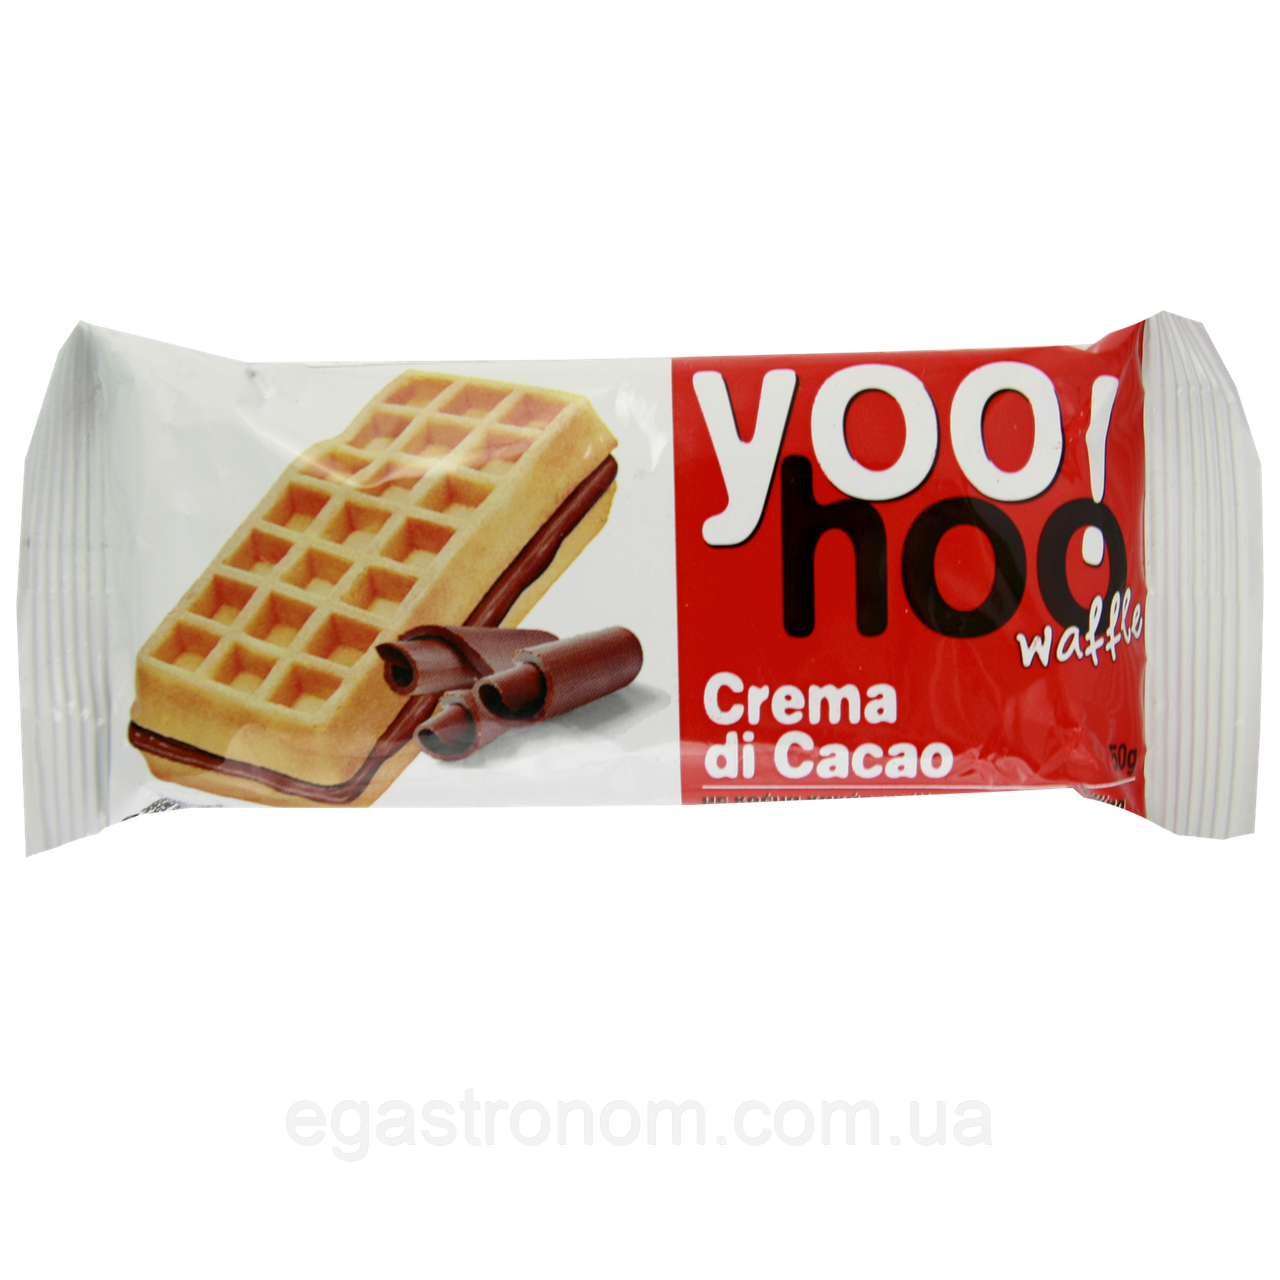 Вафлі бельгійські з какао ЮХу YOOHOO crema di cacaa 50g 12шт/ящ (Код: 00-00015047)